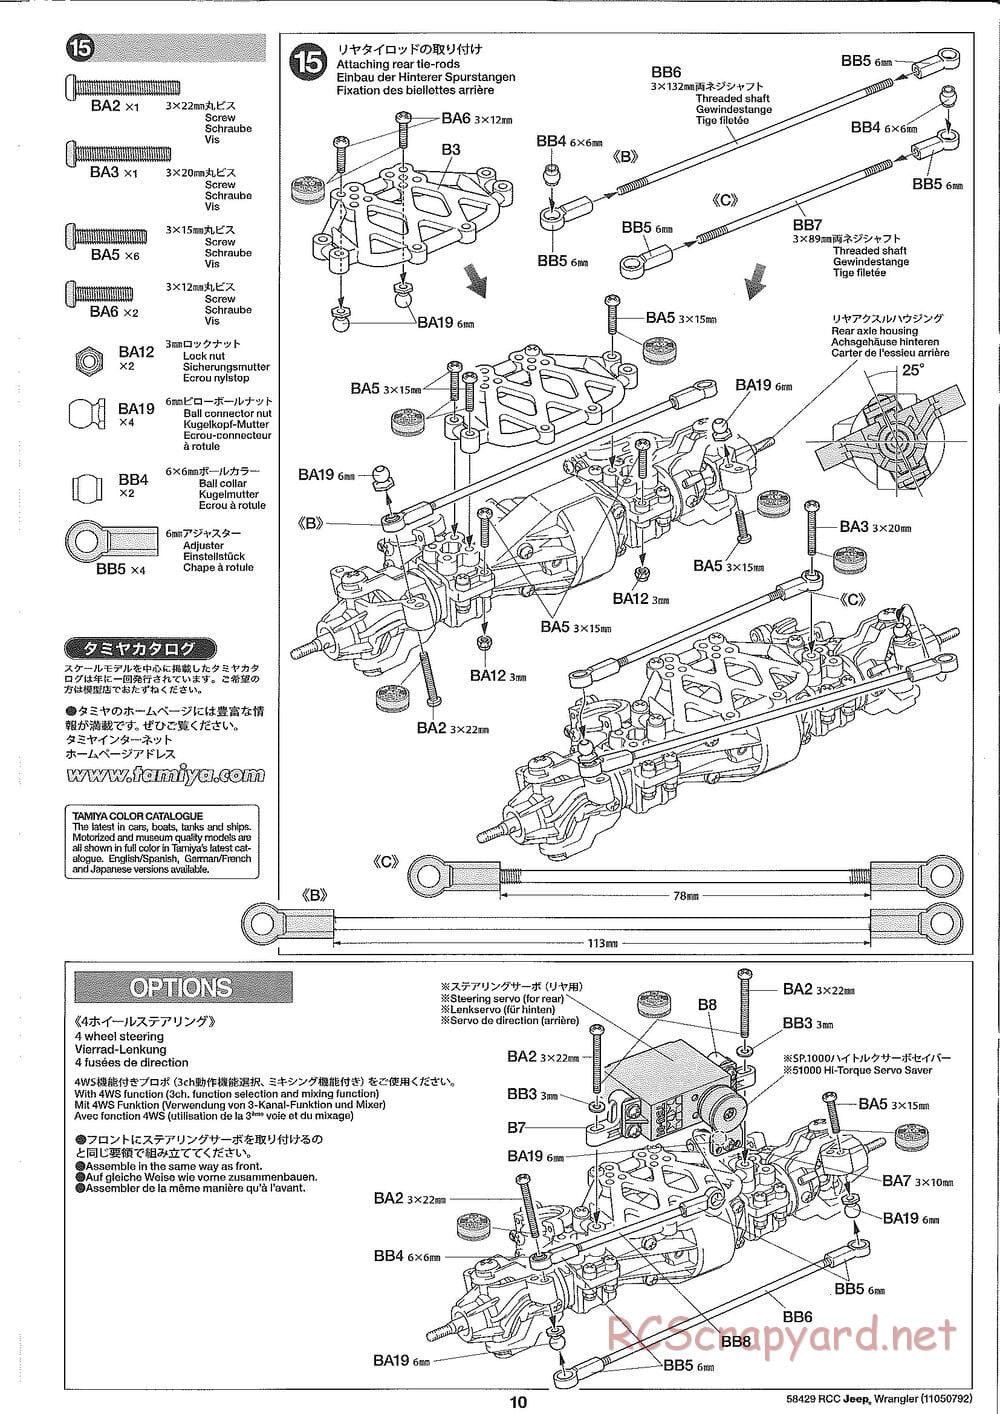 Tamiya - Jeep Wrangler - CR-01 Chassis - Manual - Page 10